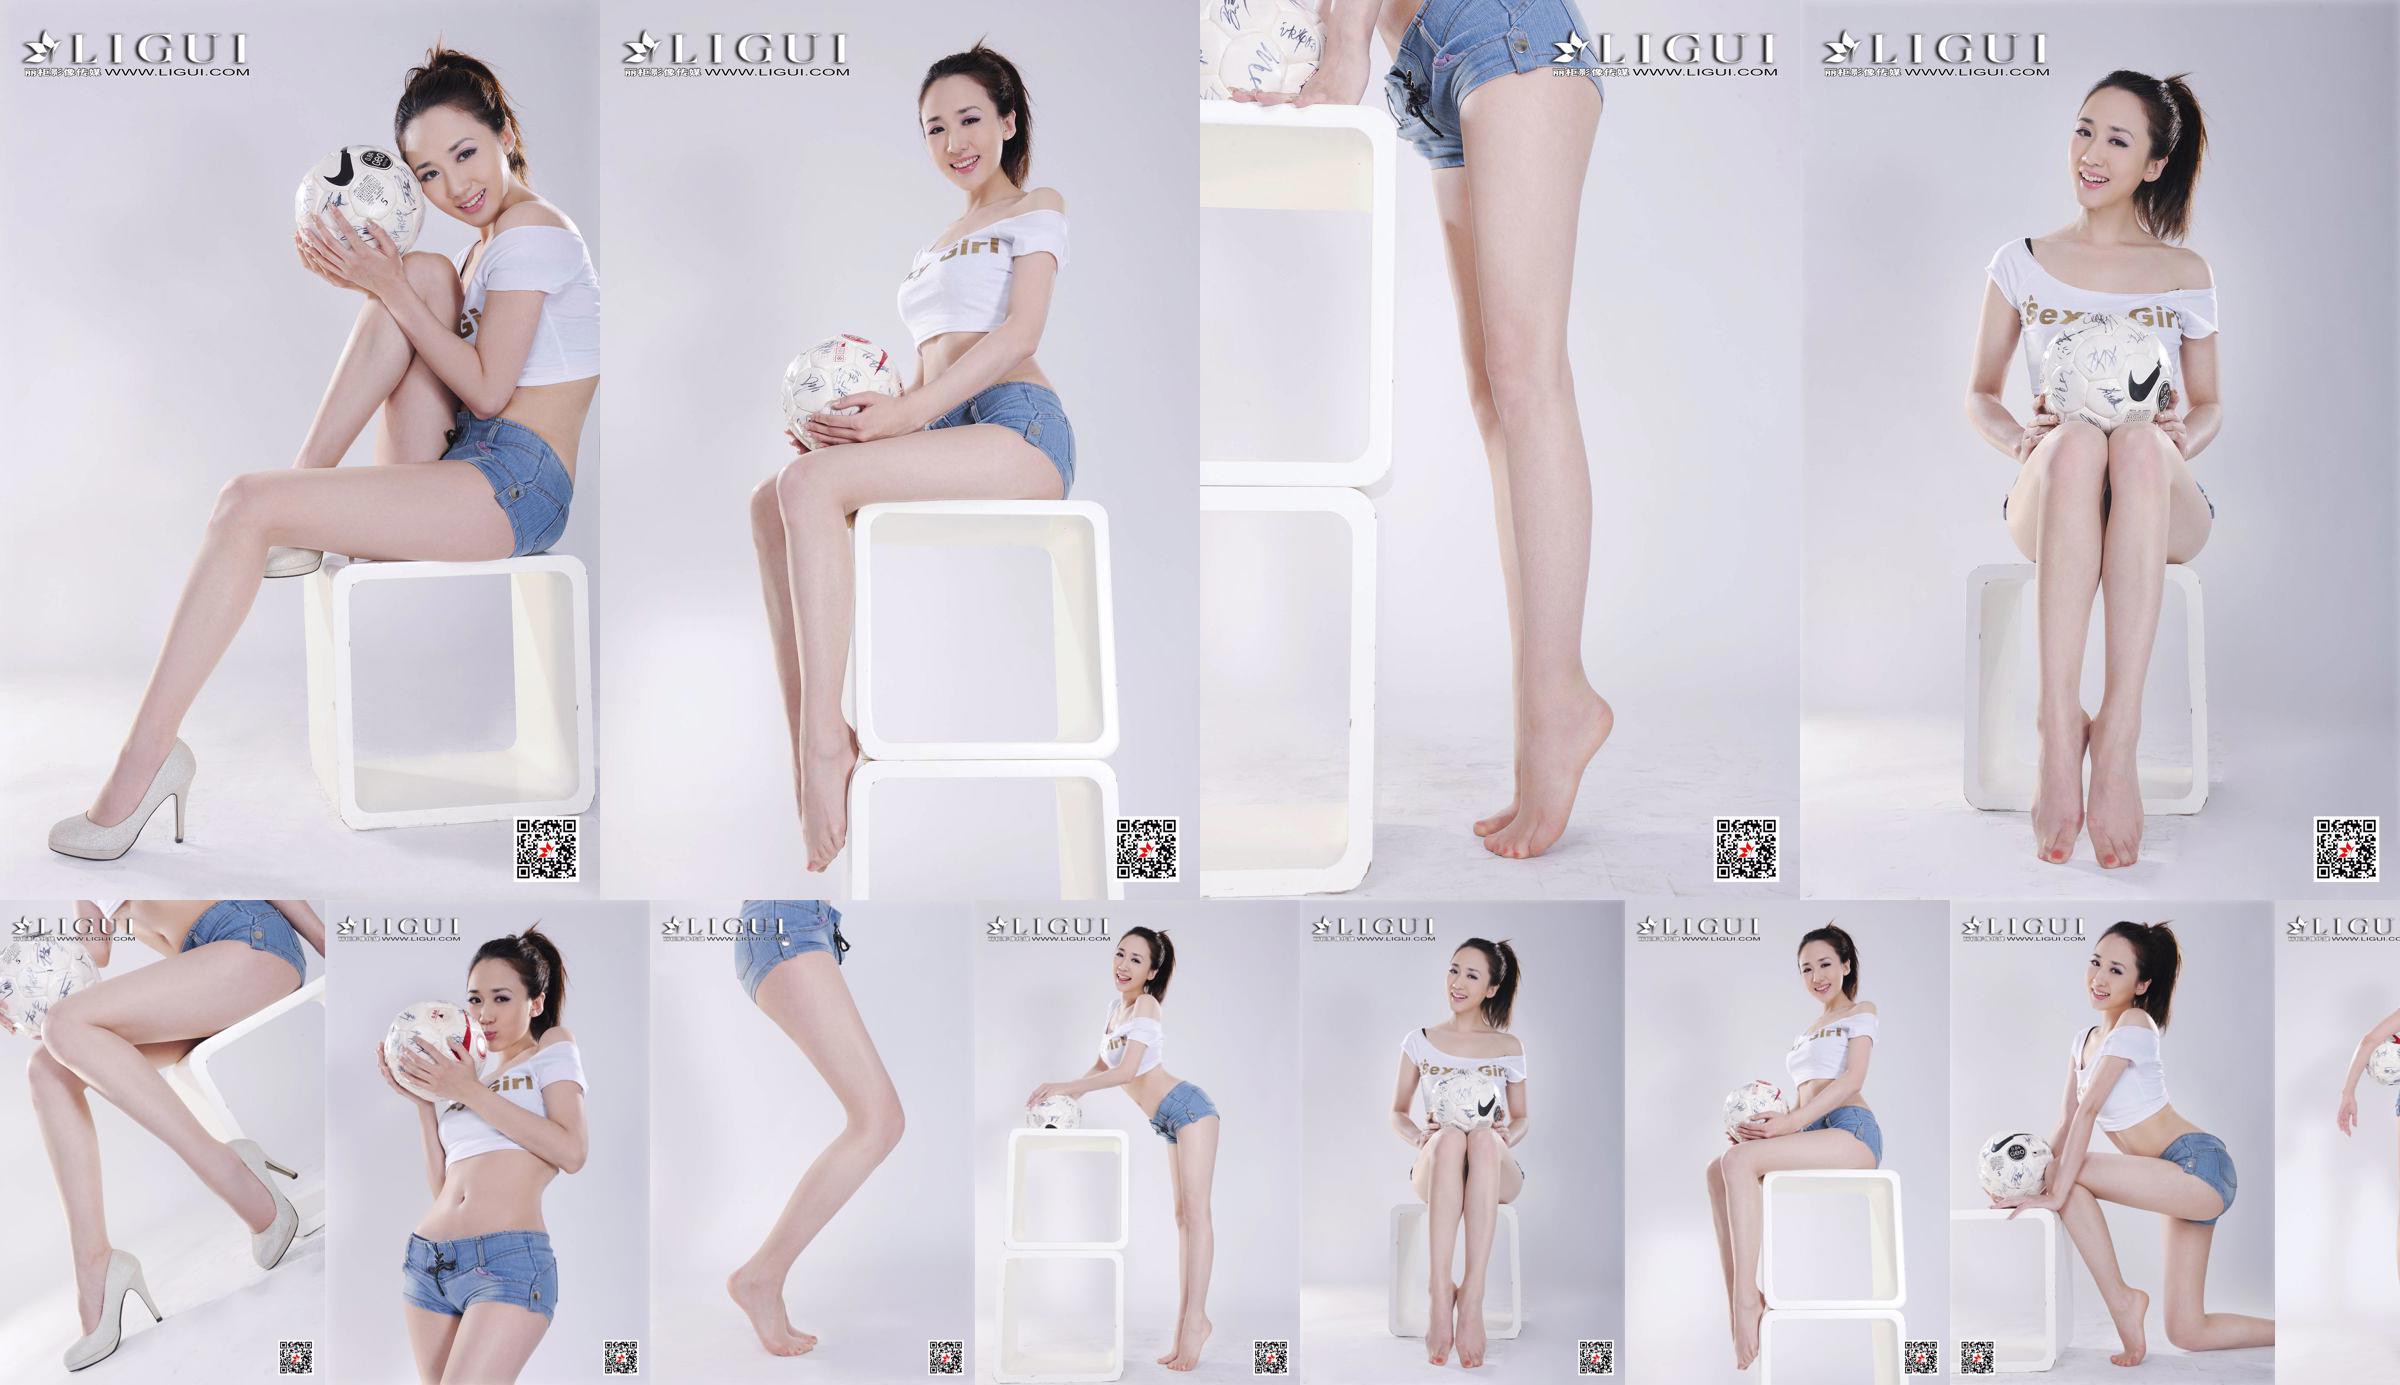 Model Qiu Chen "Super Short Hot Pants Football Girl" [LIGUI] No.7544d4 Page 3